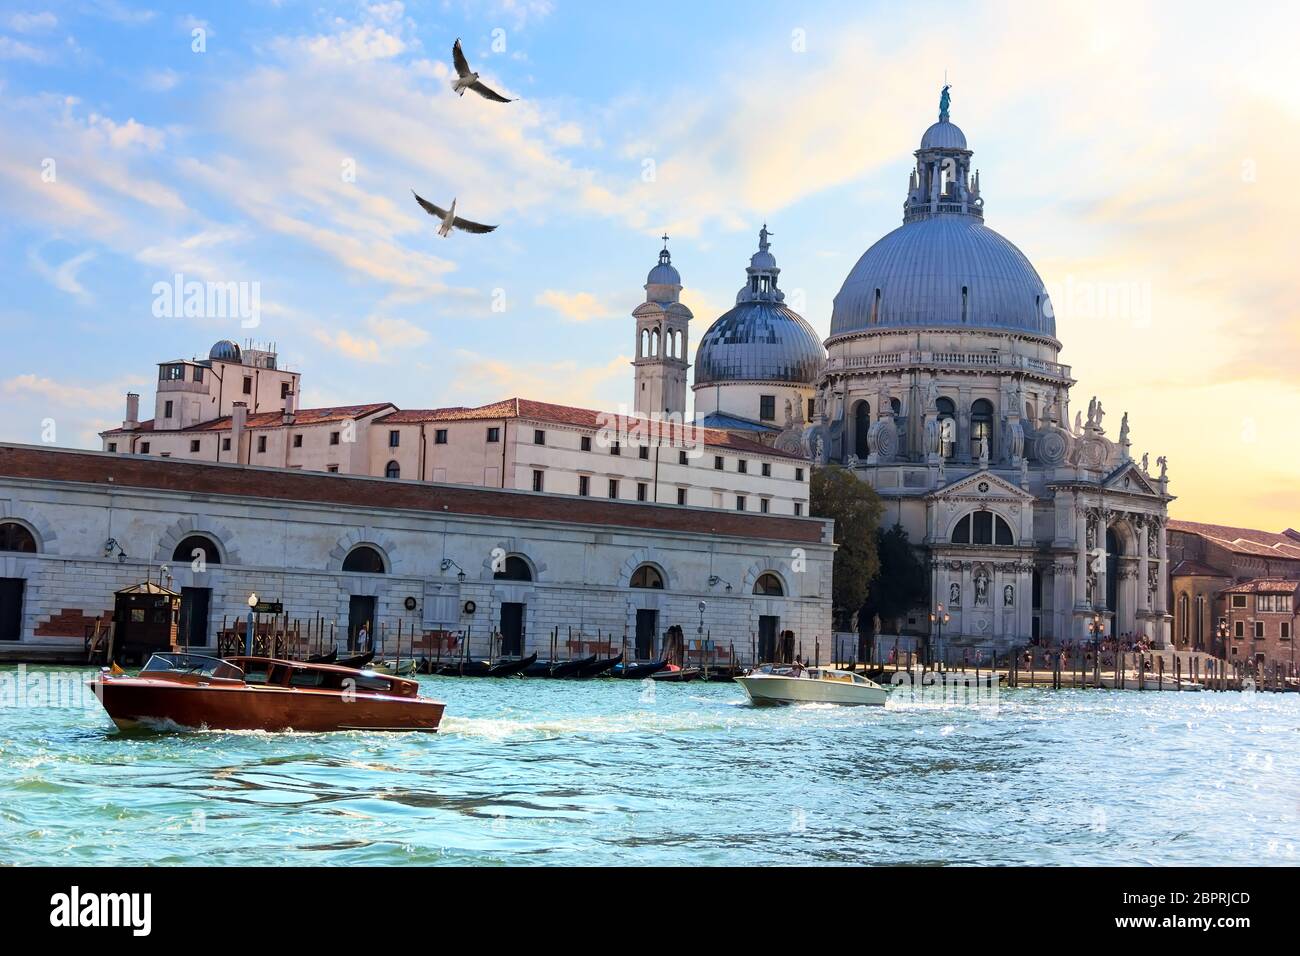 Venice lagoon view and Basilica of Santa Maria della Salute, Italy. Stock Photo